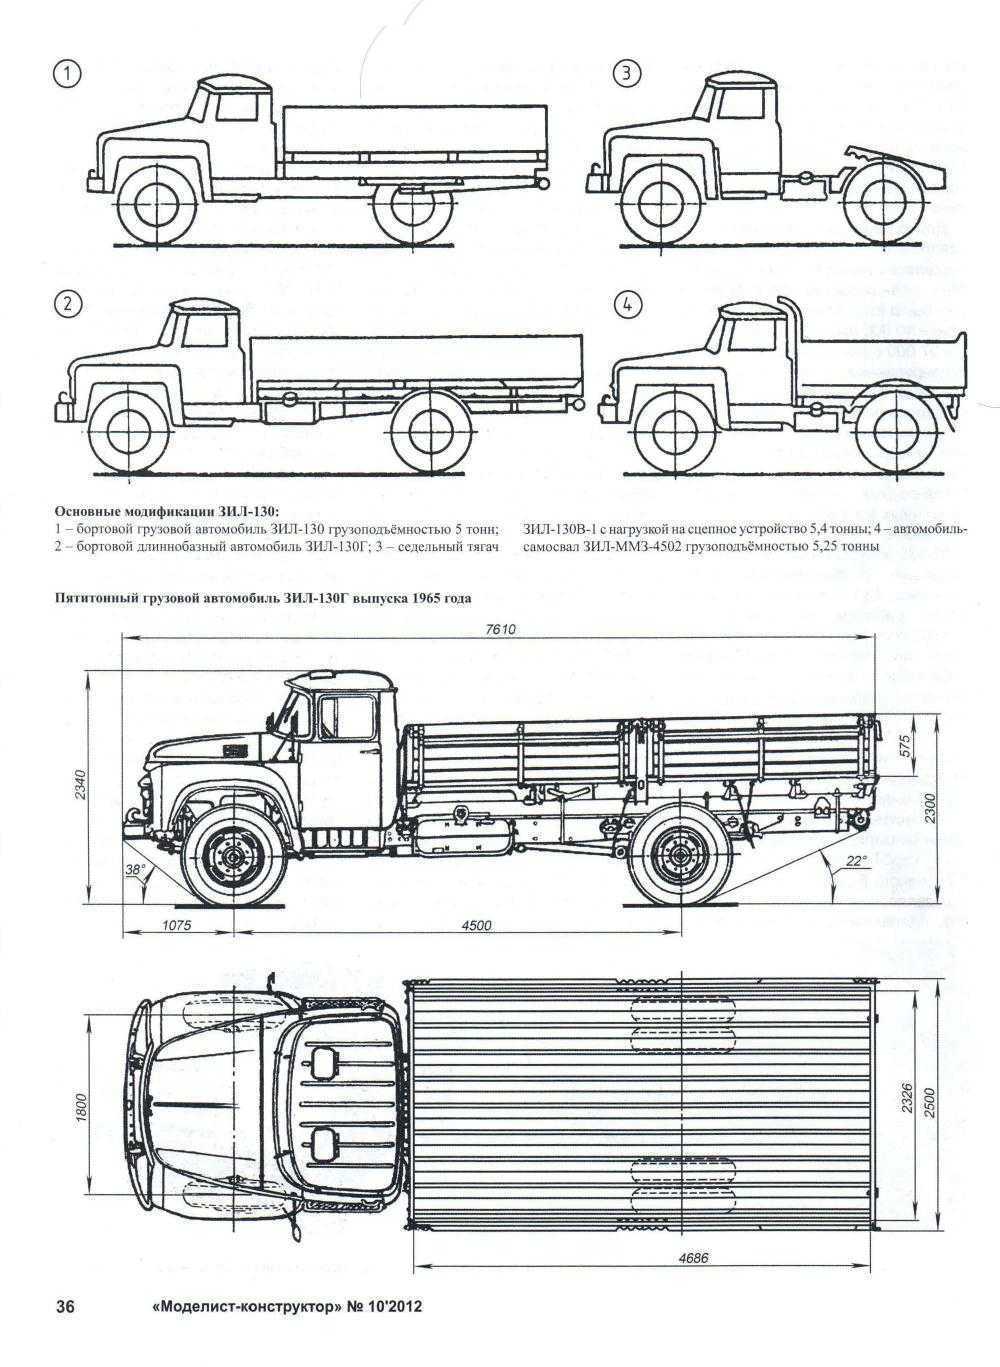 Зил-4331: технические характеристики, описание автомобиля | все о спецтехнике